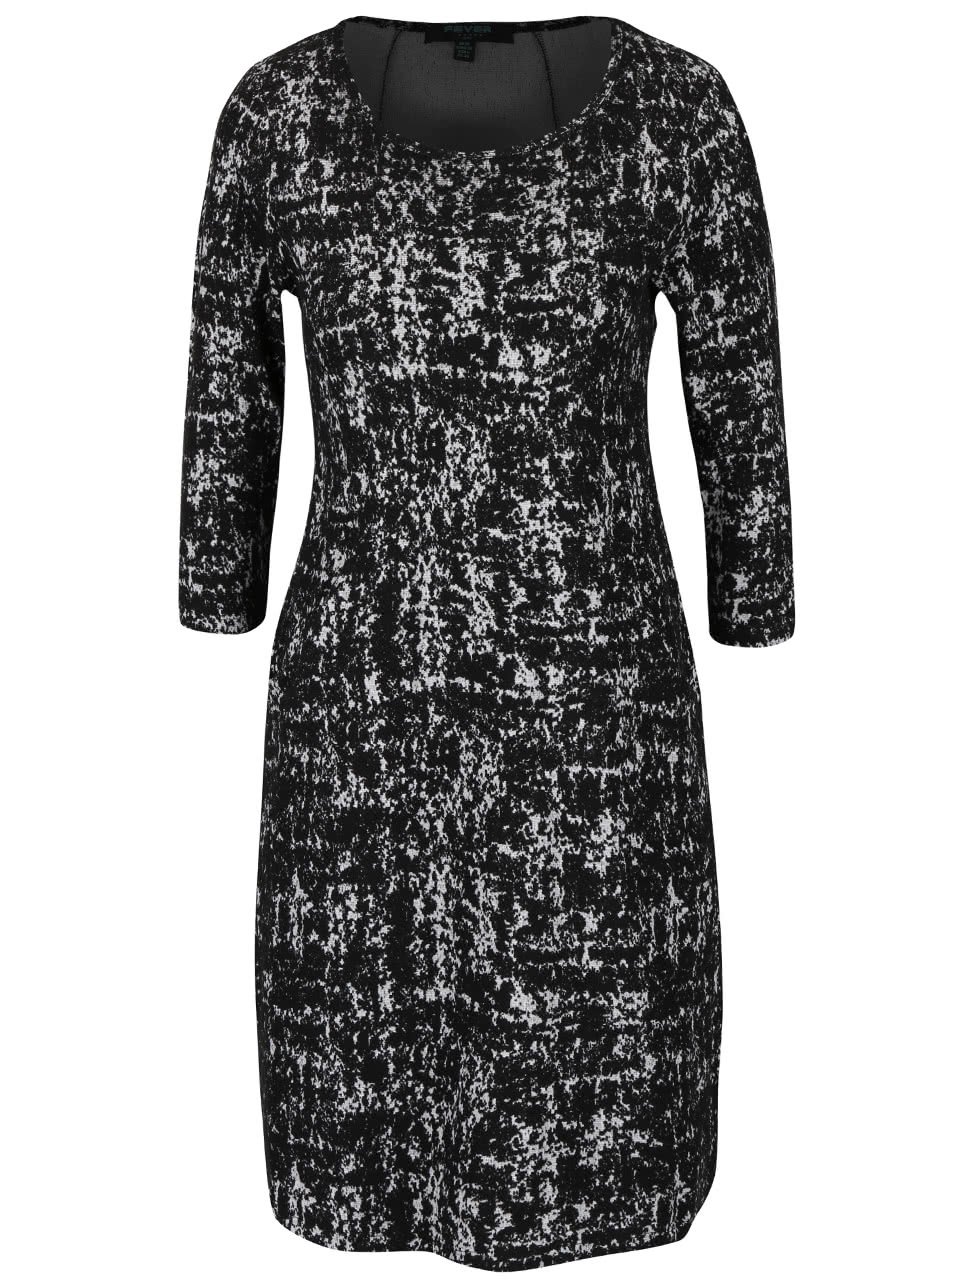 Černé vzorované strečové šaty s kapsami Fever London Logan